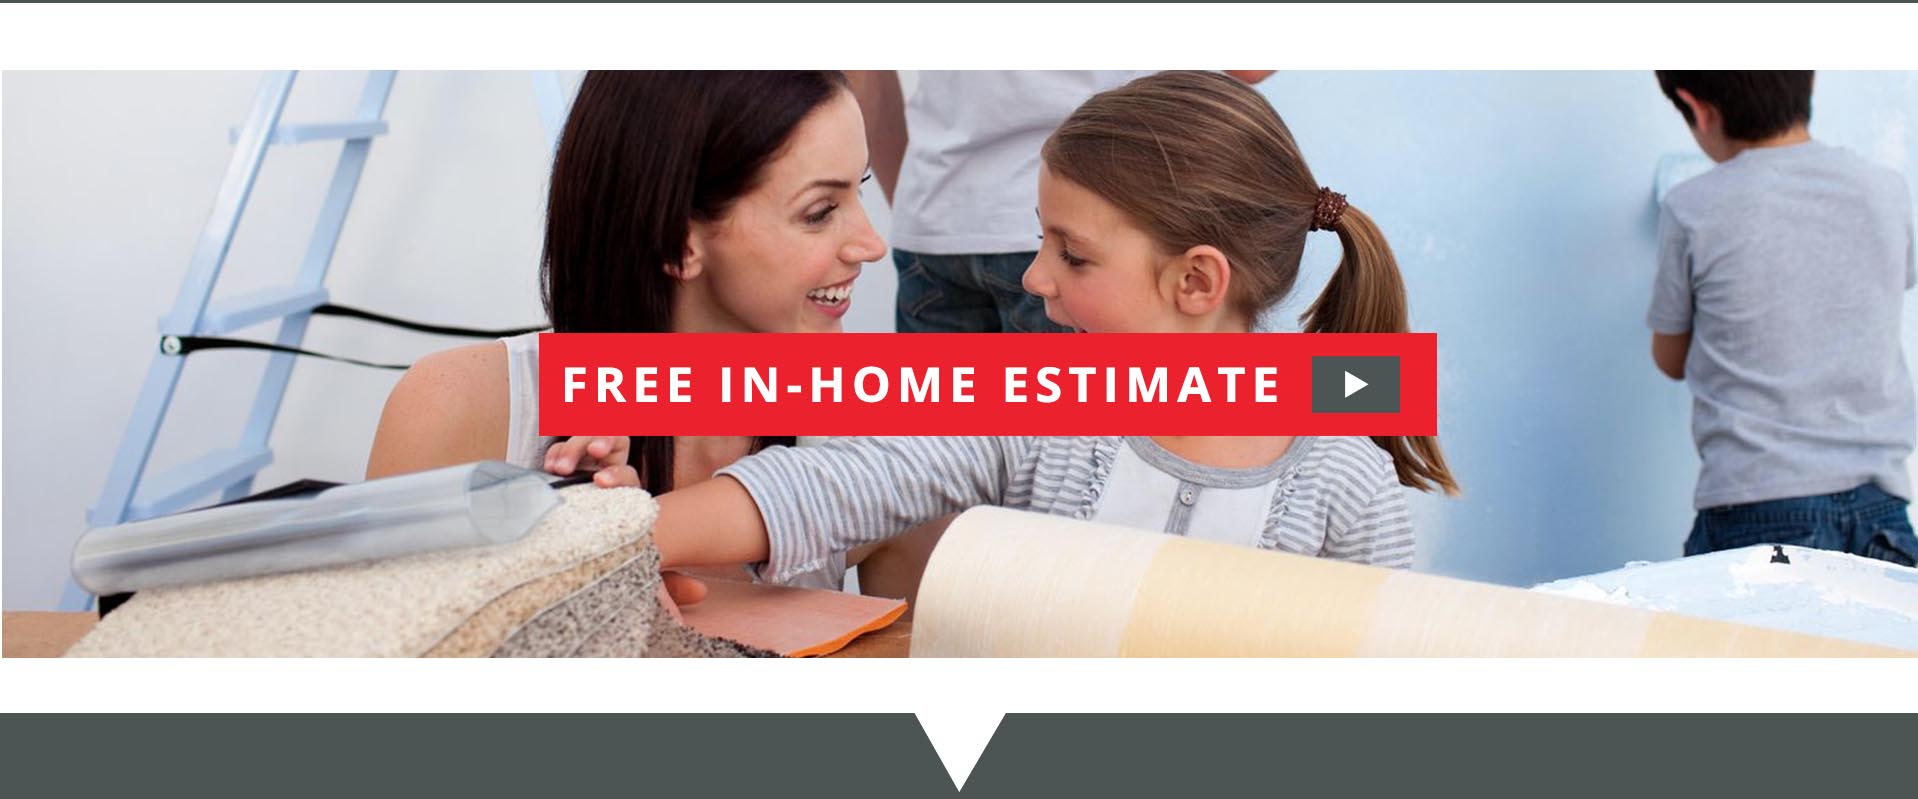 Free In Home Estimate